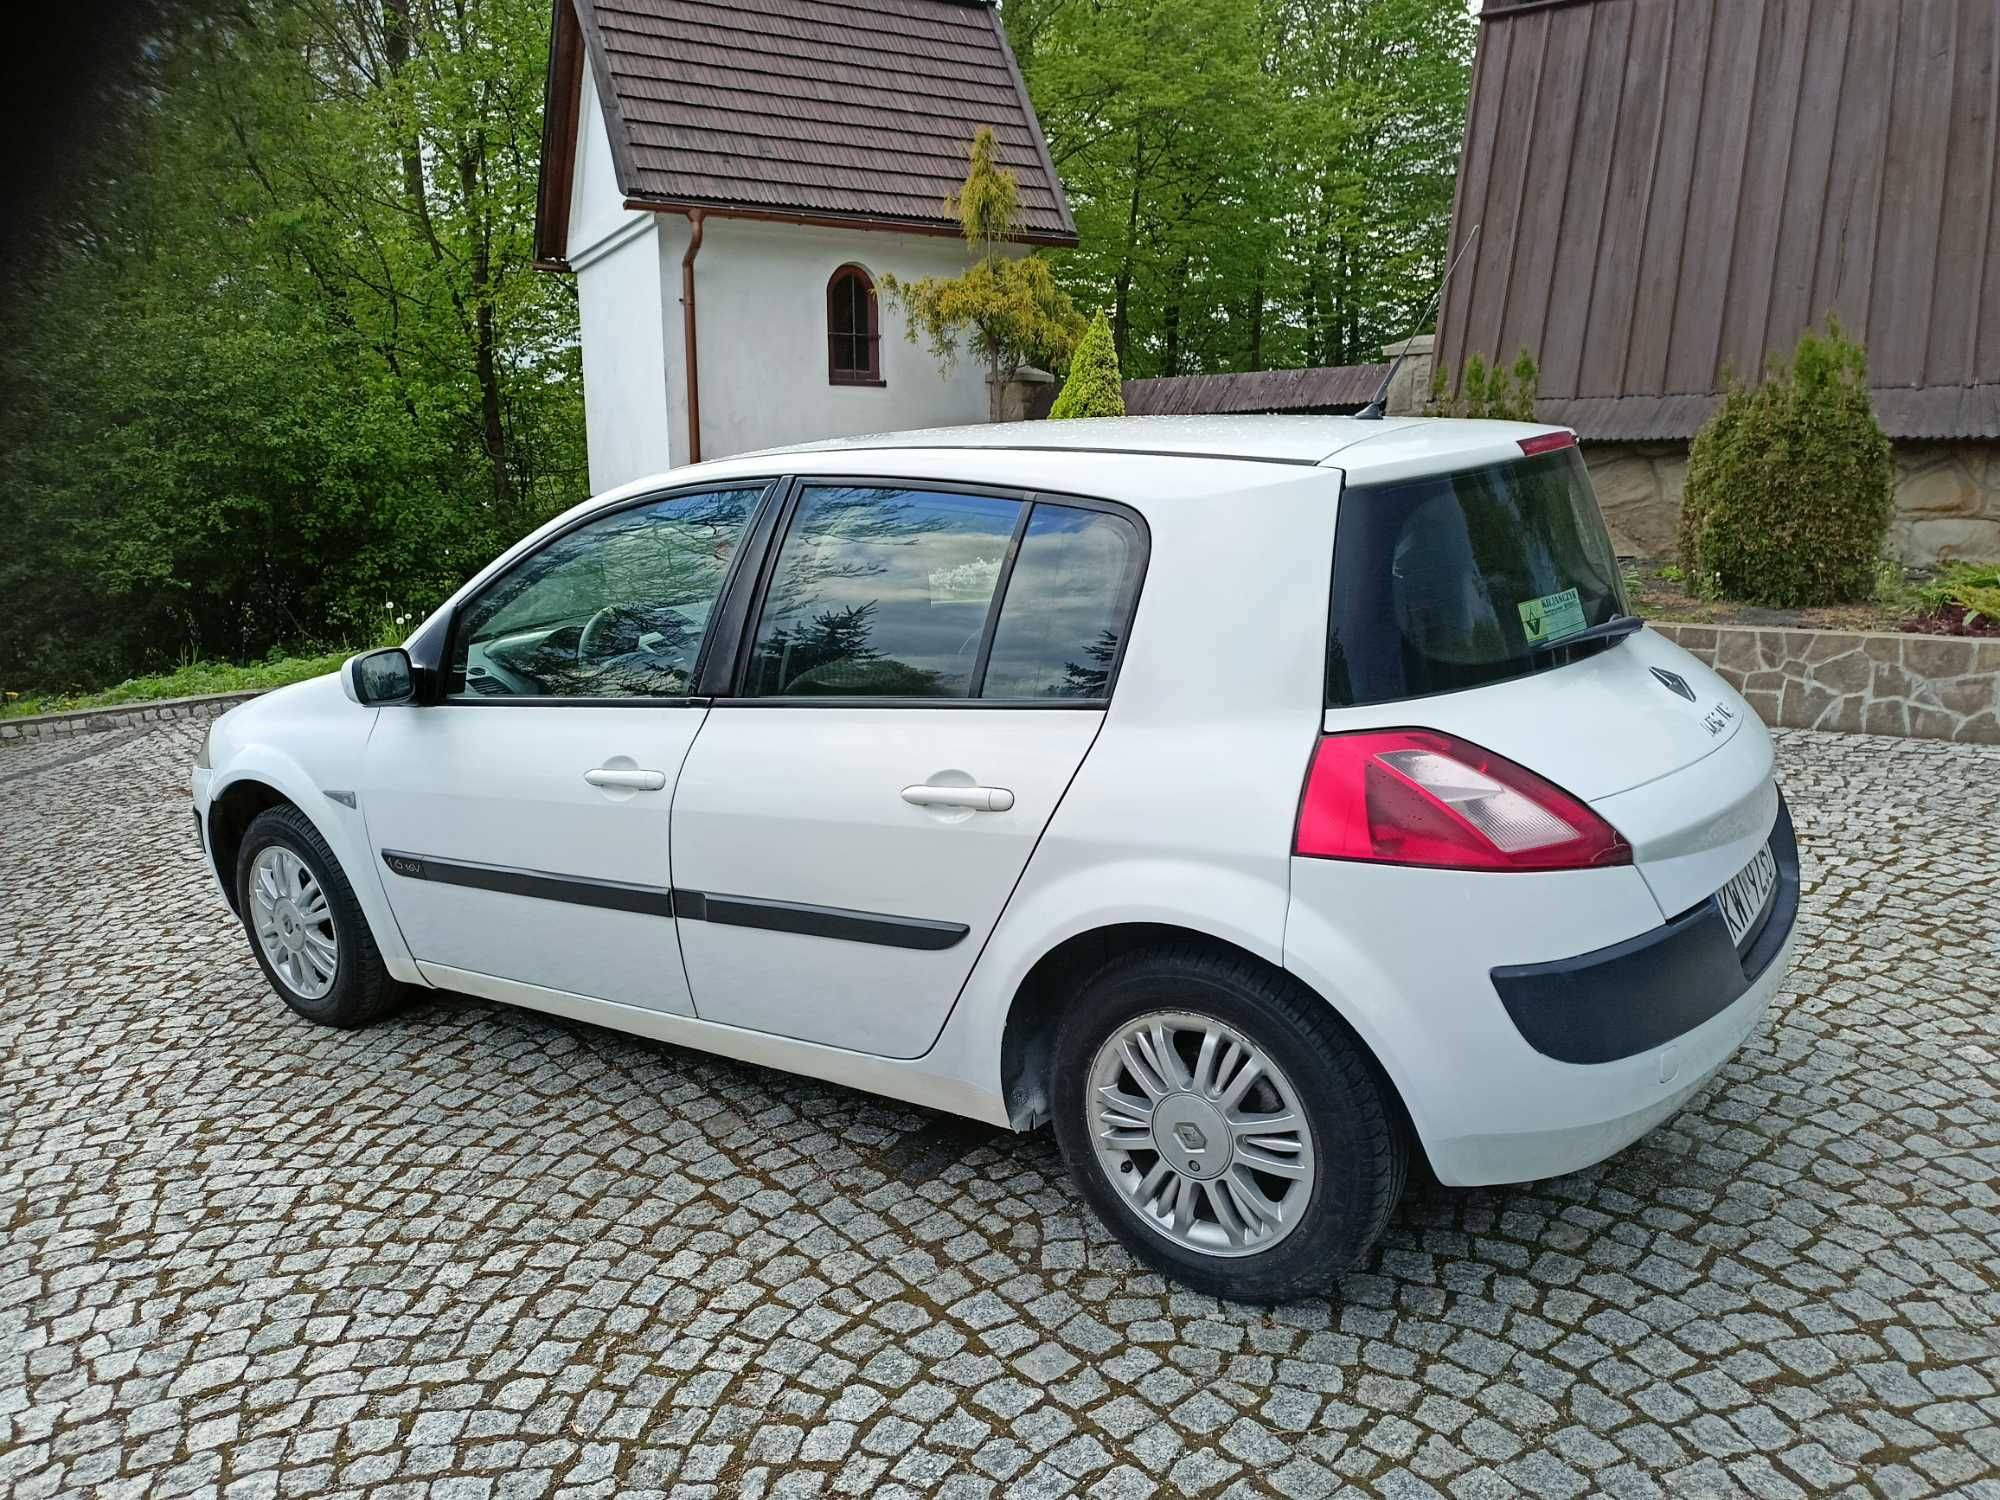 Śliczna Renault MEGANE 1,6 -GAZ-Klima -sprawna -Biel alpejska